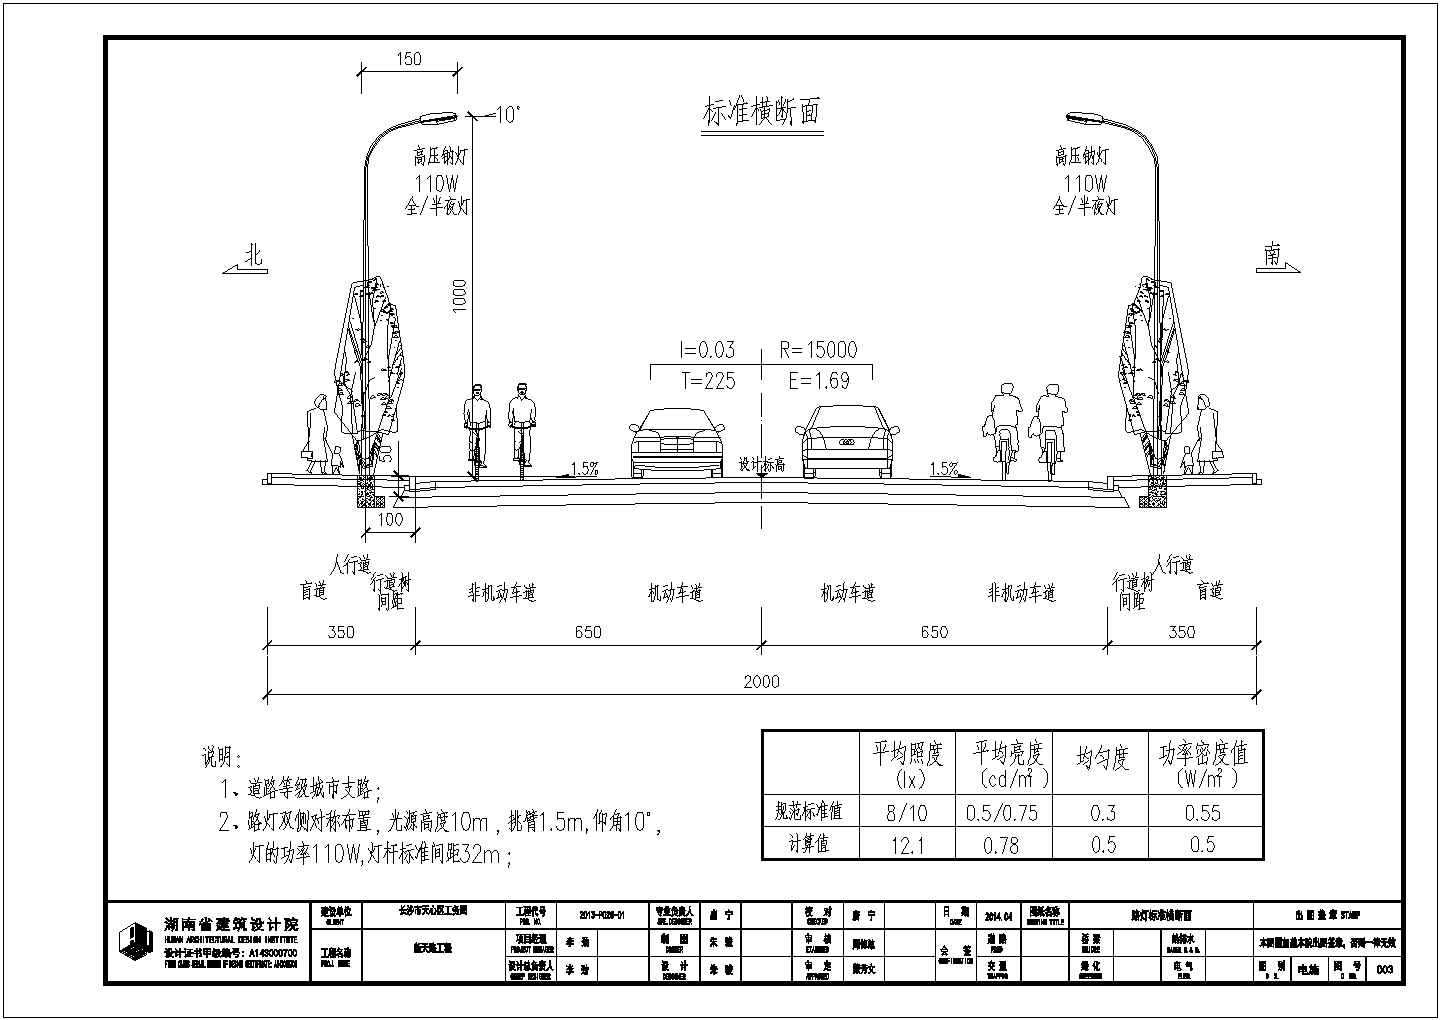 【长沙】某新天路K0+000-260道路工程施工招标文件、图纸及清单